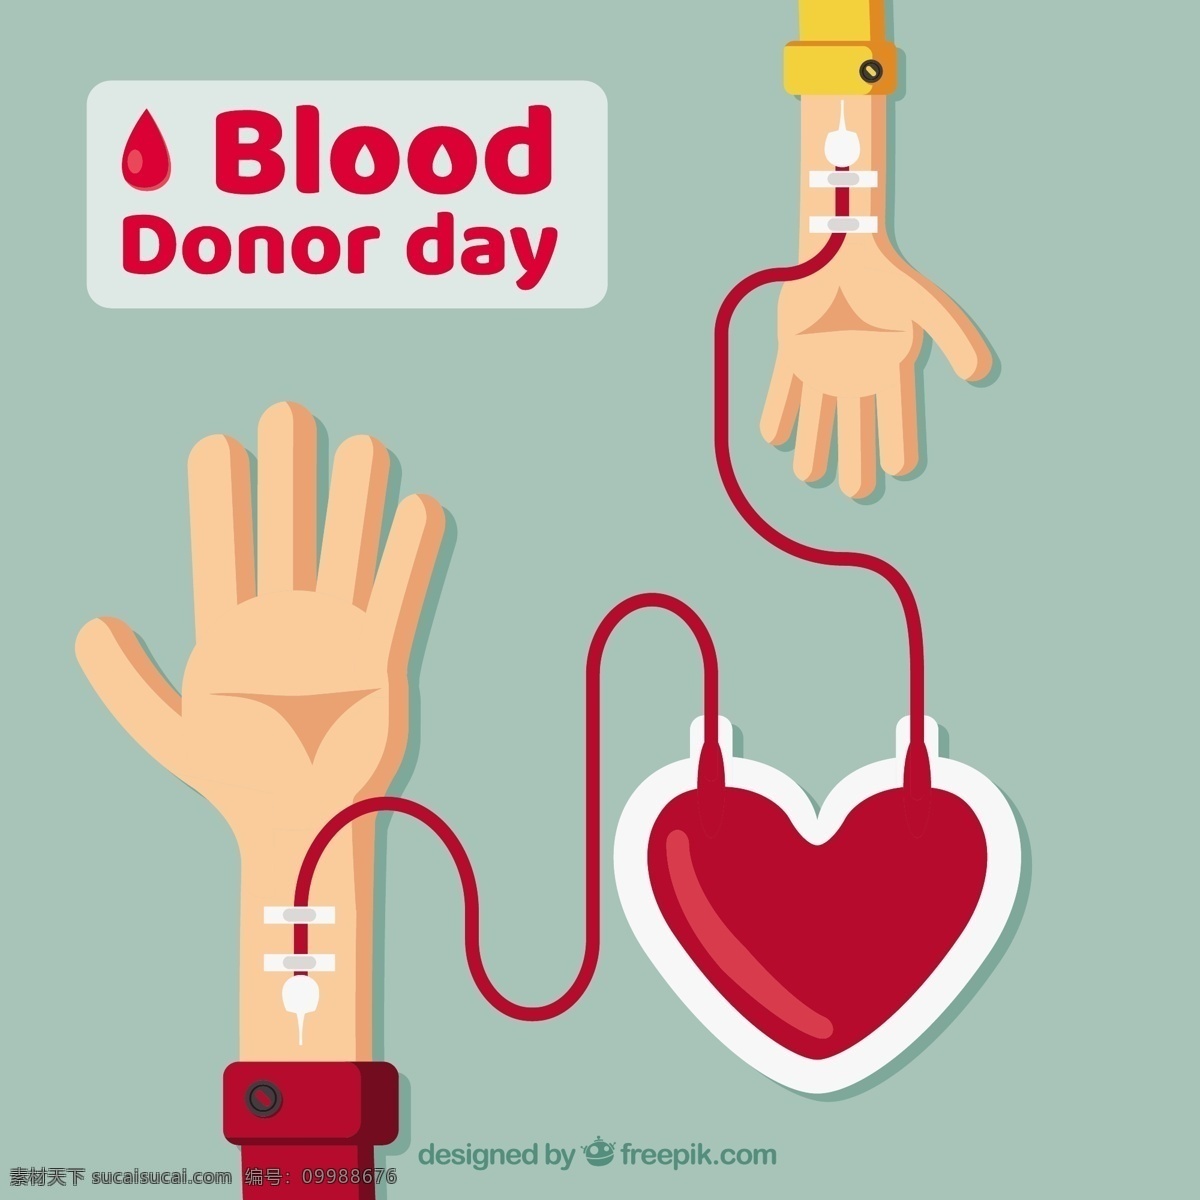 世界 献血者 日 双臂 输血 心脏 背景 世界献血者日 双臂输血 心脏背景